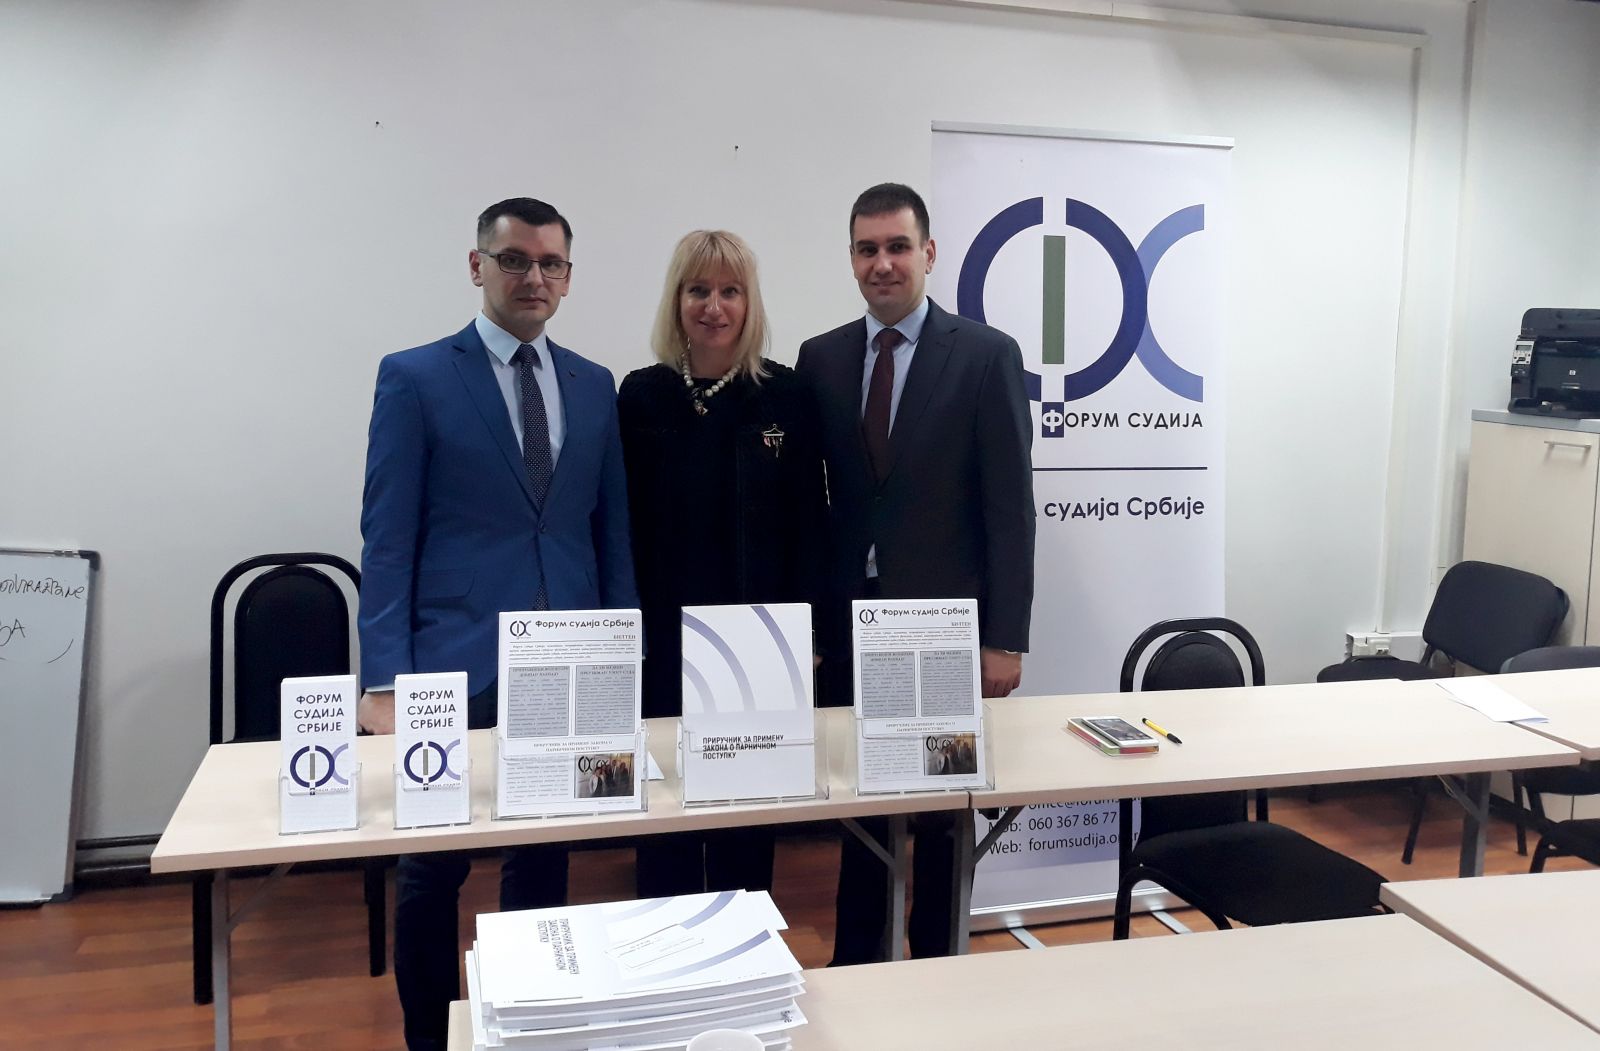 Poseta Osnovnom sudu u Kragujevcu 02-2019